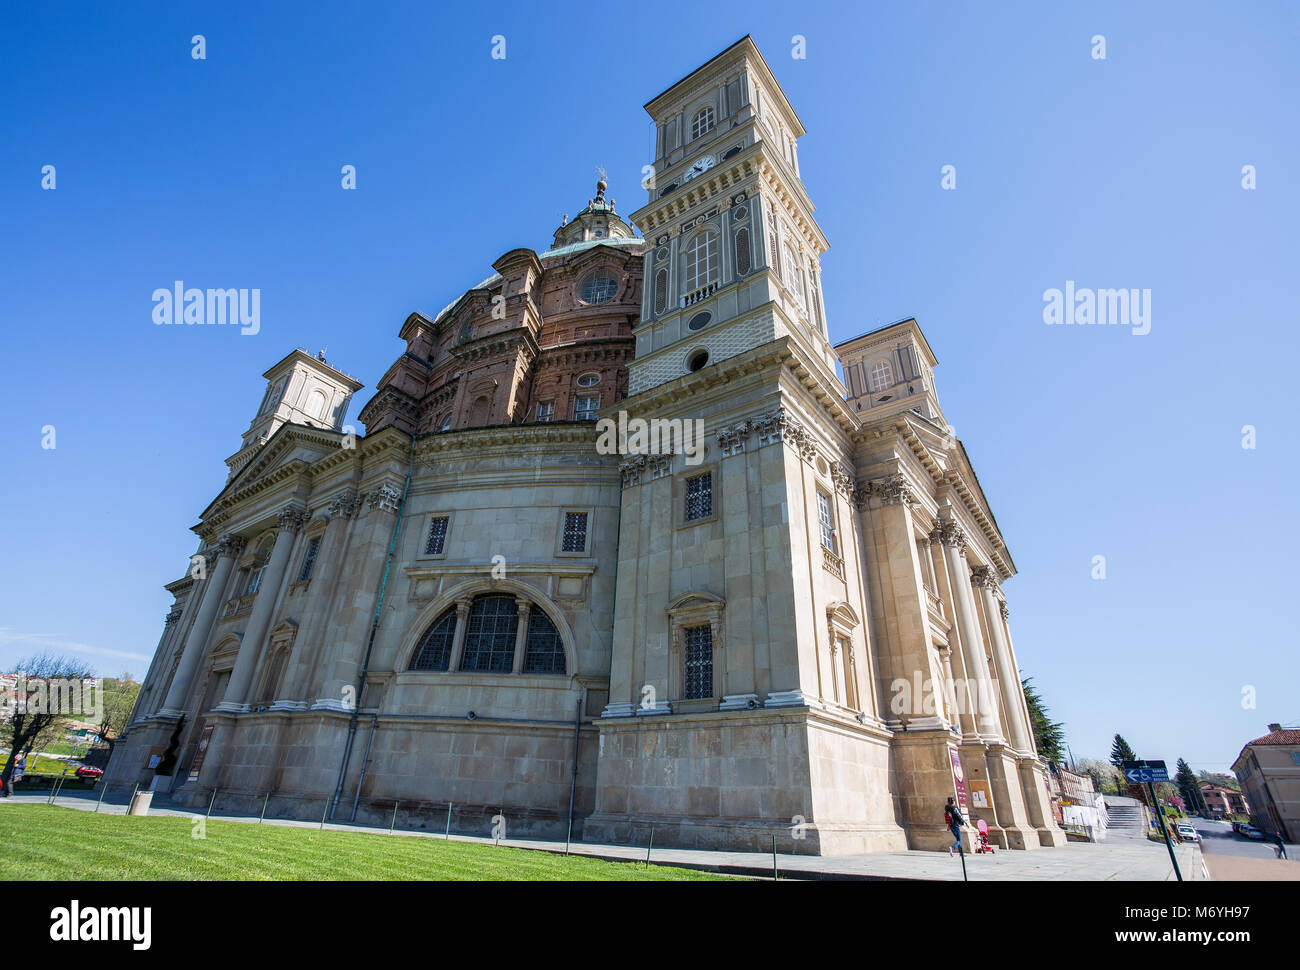 VICOFORTE, ITALIE 11 AVRIL 2017 - Sanctuaire de Vicoforte, province de Cuneo, Piémont, Italie, le plus grand dôme elliptique dans le monde. Banque D'Images